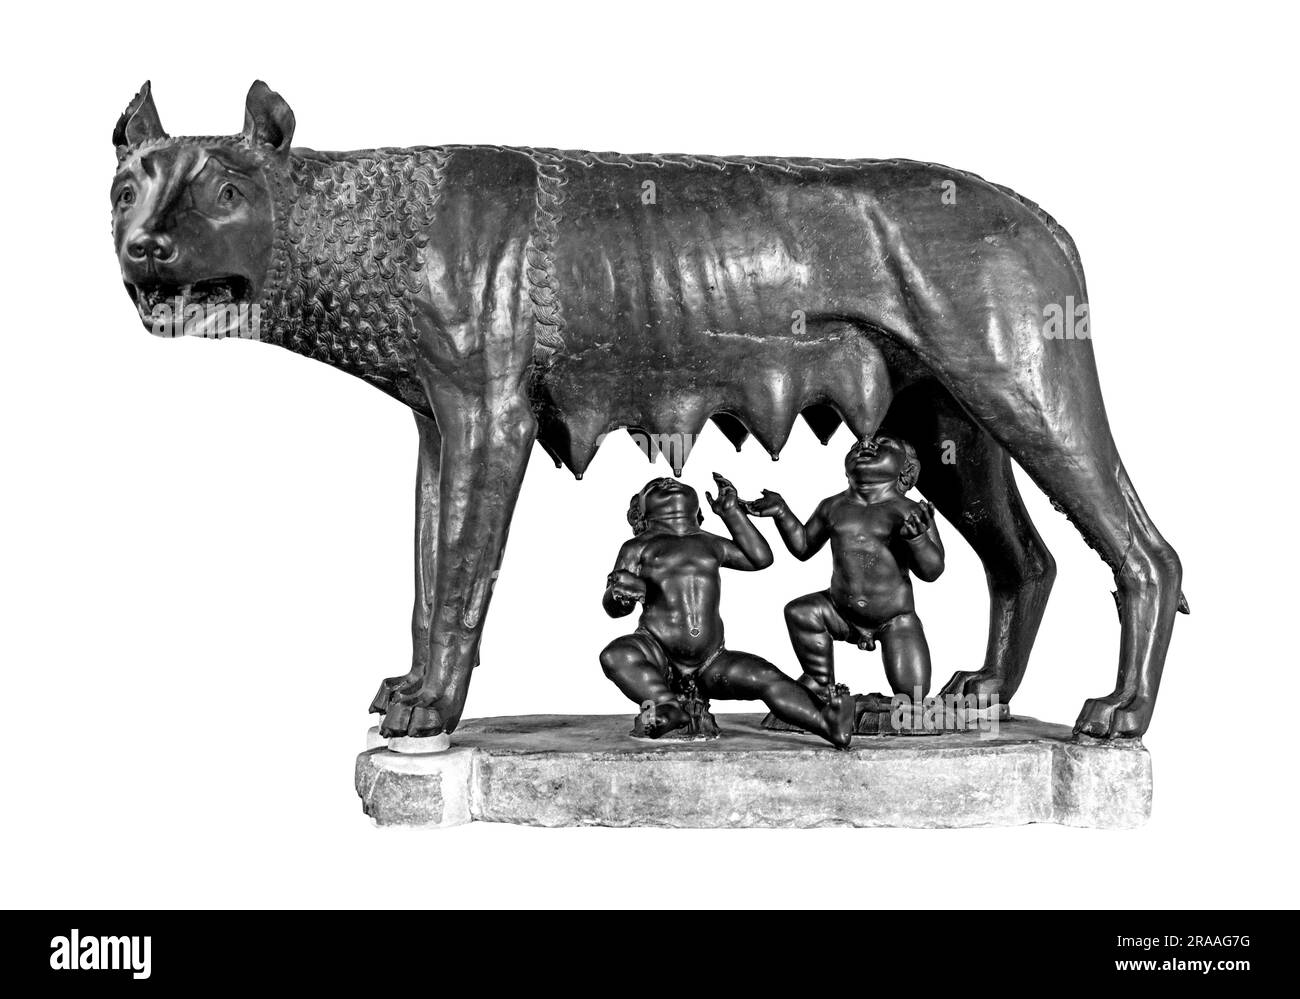 Capitoline She-Wolf ou Lupa Capitolina, une figure en bronze montrant Romulus et Remus, les fondateurs mythiques de la ville de Rome en Italie, en noir et blanc Banque D'Images